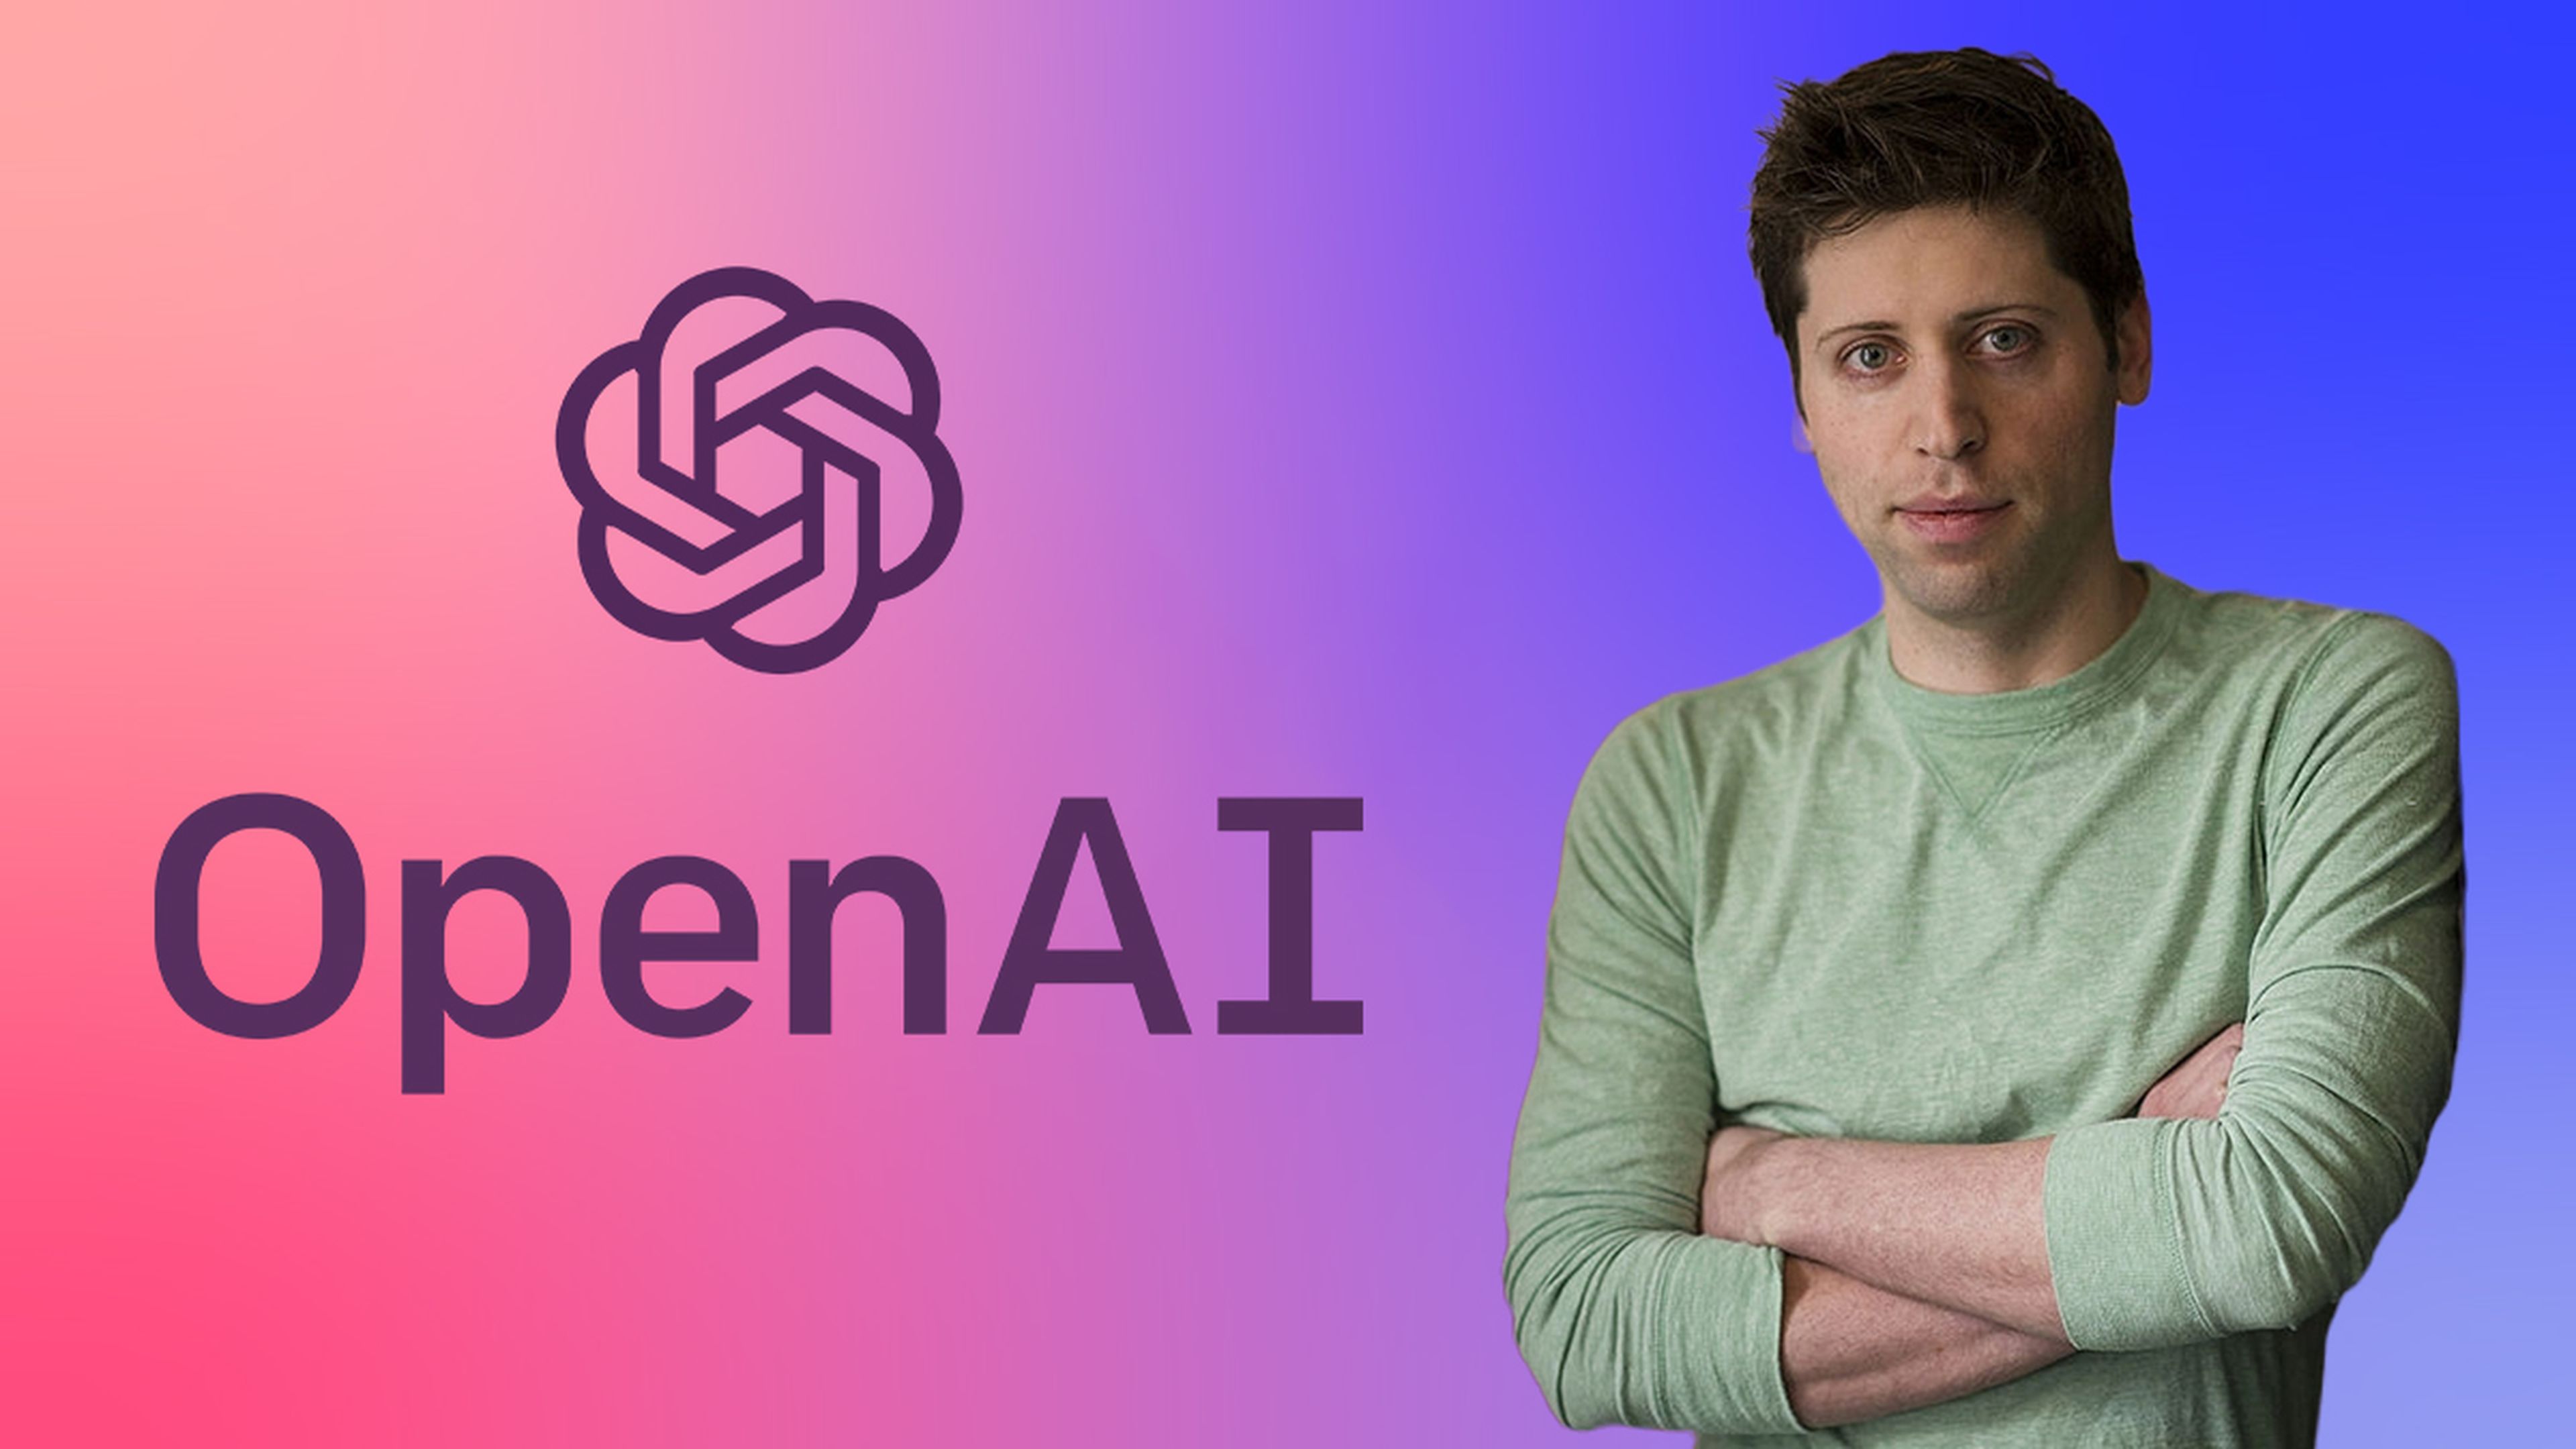 El futuro de la IA, Google, GPT-4 y el mundo laboral: esto es lo que opina el CEO de OpenAI, Sam Altman al respecto